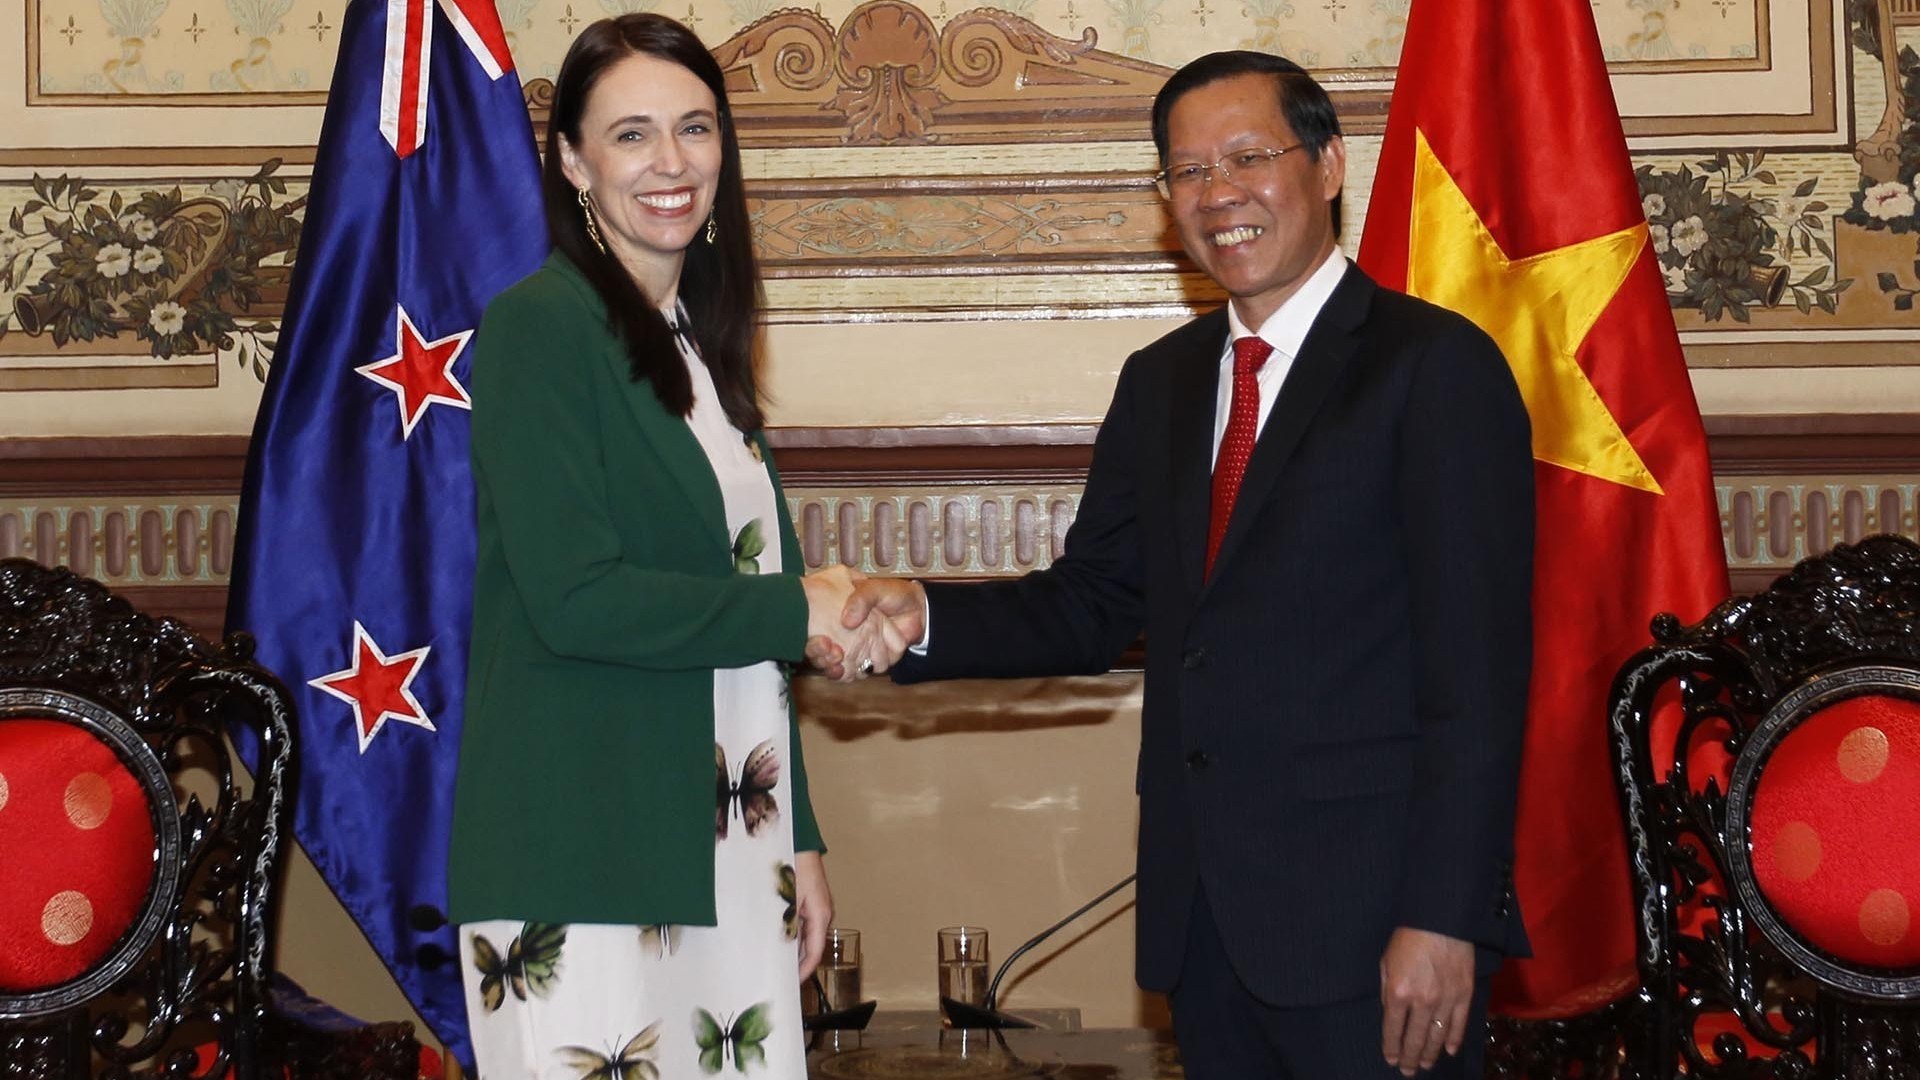 Thành phố Hồ Chí Minh sẽ đẩy mạnh các hoạt động hợp tác với các địa phương, doanh nghiệp New Zealand